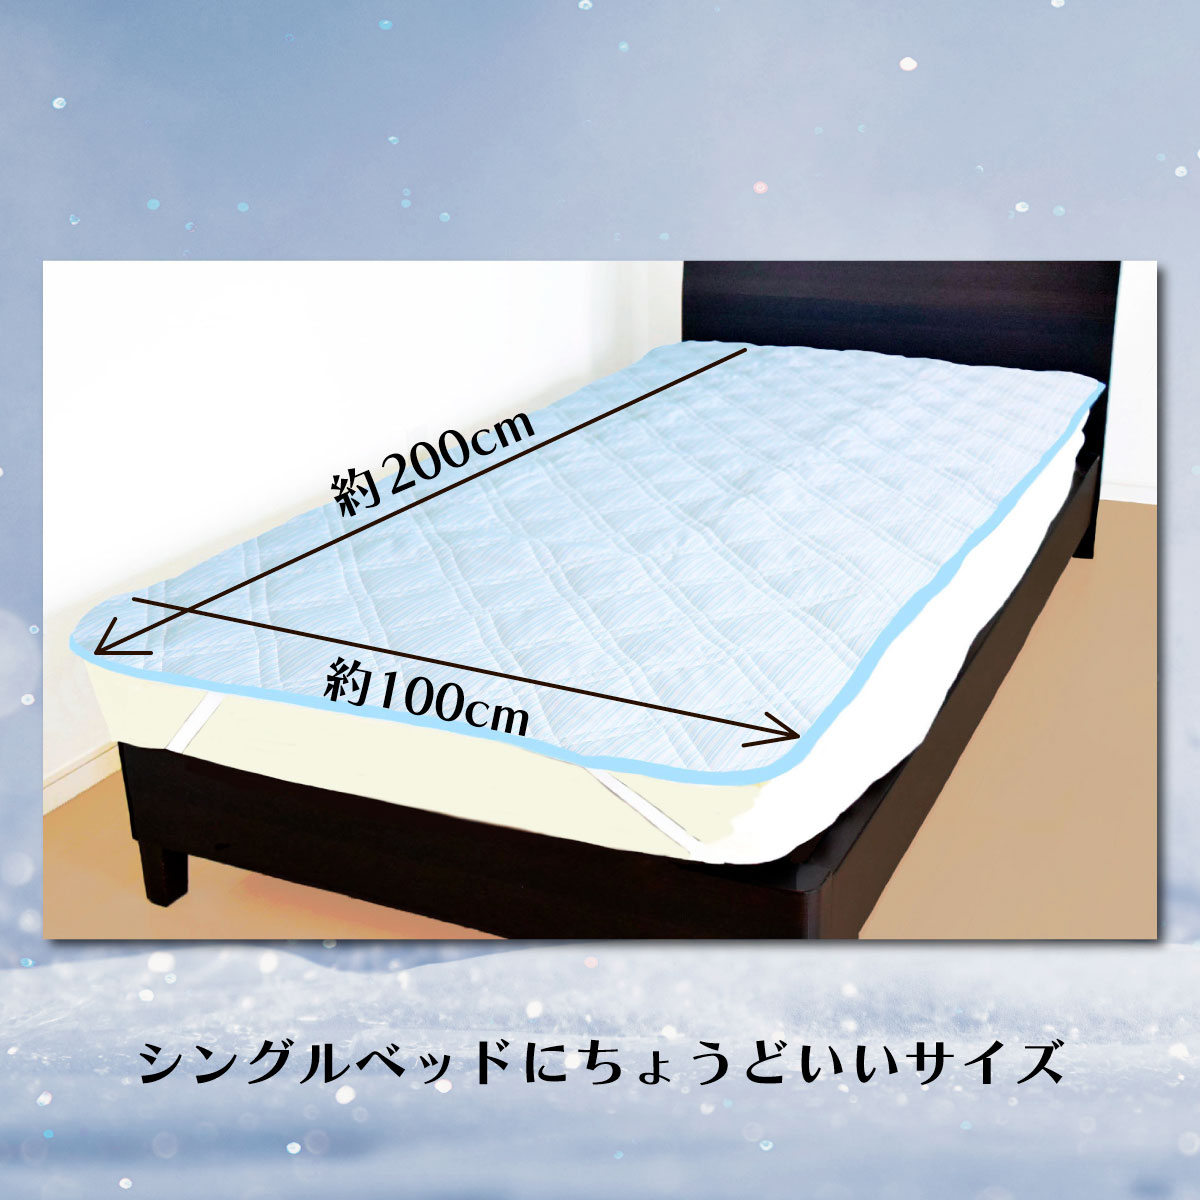 シングルベッドにちょうどよい大きさである写真を載せたストライプサックスのバナー画像